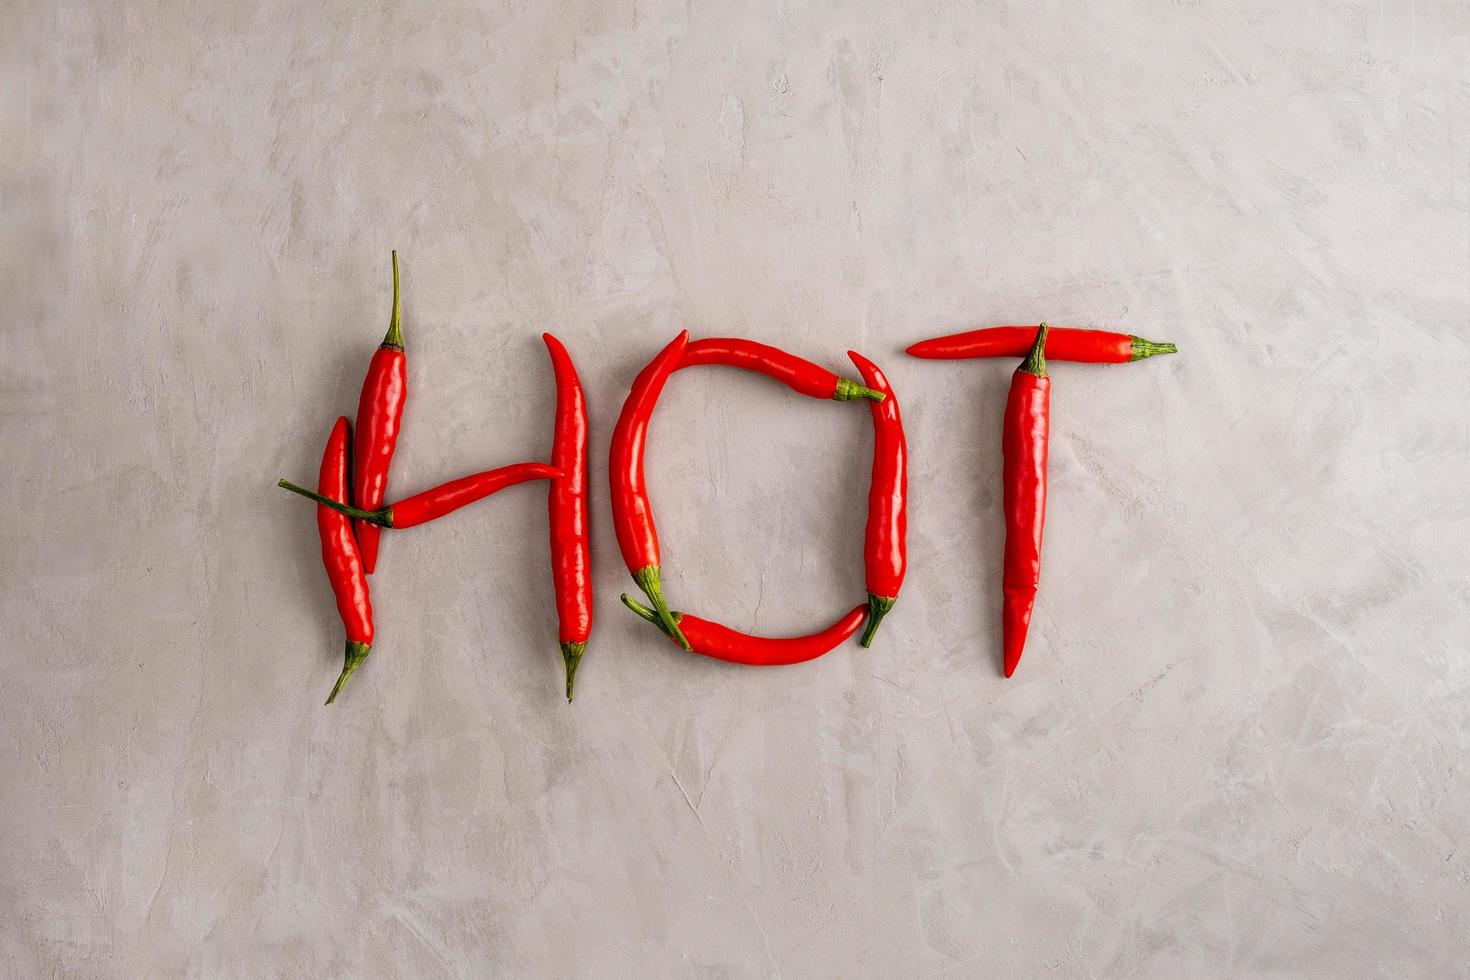 Hot-Schriftzug ist gefüttert mit Schoten roter scharfer Chilischoten foto